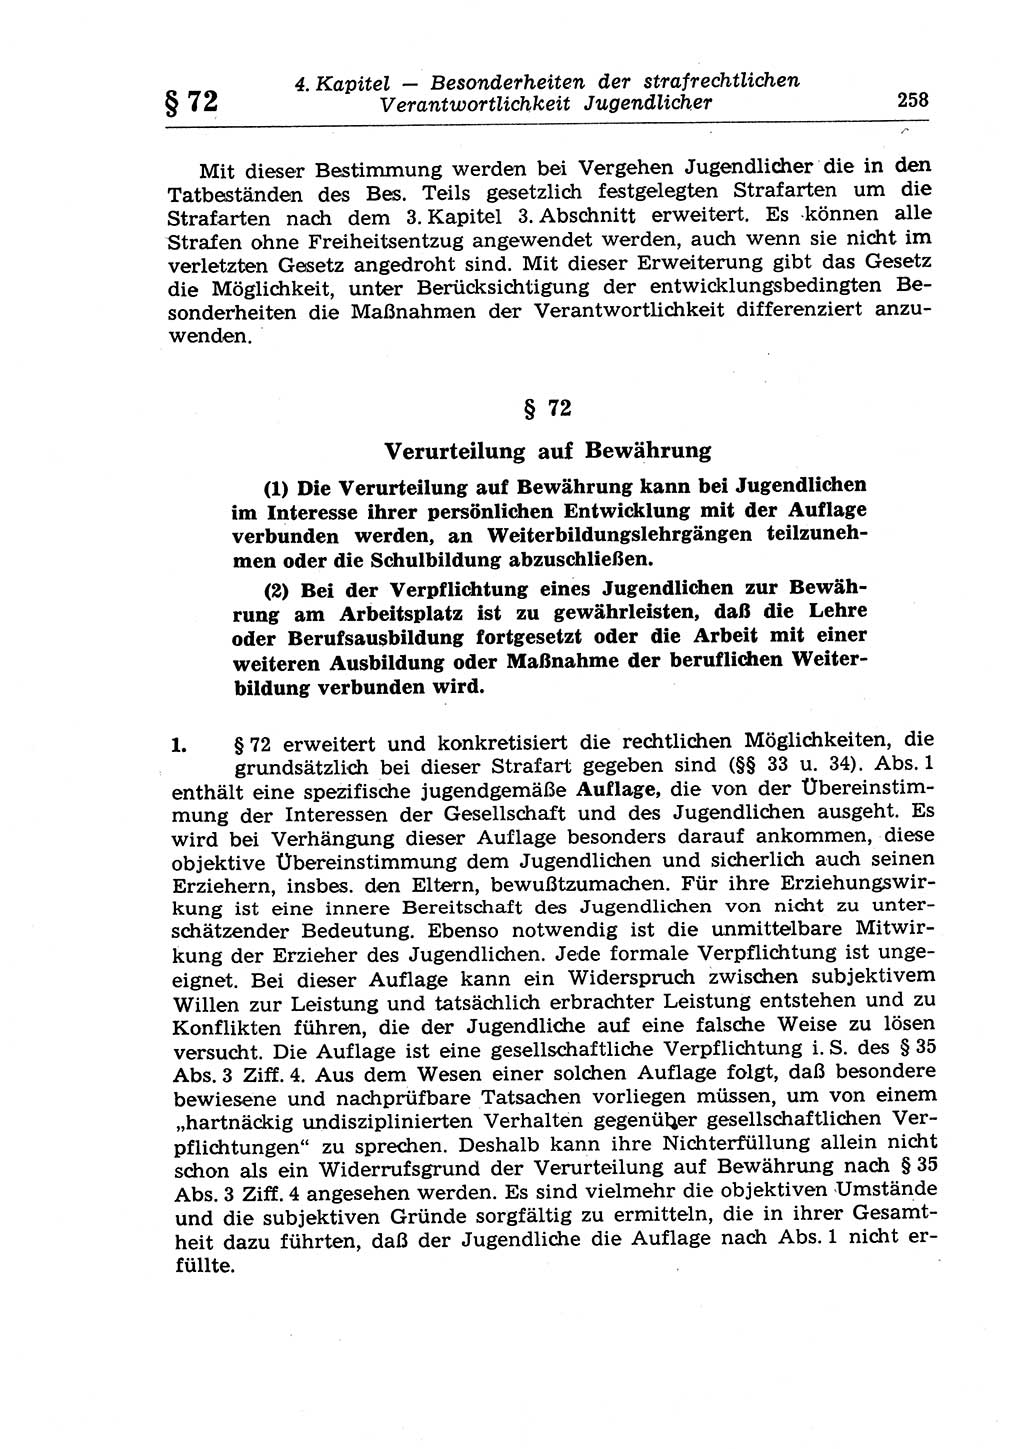 Strafrecht der Deutschen Demokratischen Republik (DDR), Lehrkommentar zum Strafgesetzbuch (StGB), Allgemeiner Teil 1970, Seite 258 (Strafr. DDR Lehrkomm. StGB AT 1970, S. 258)